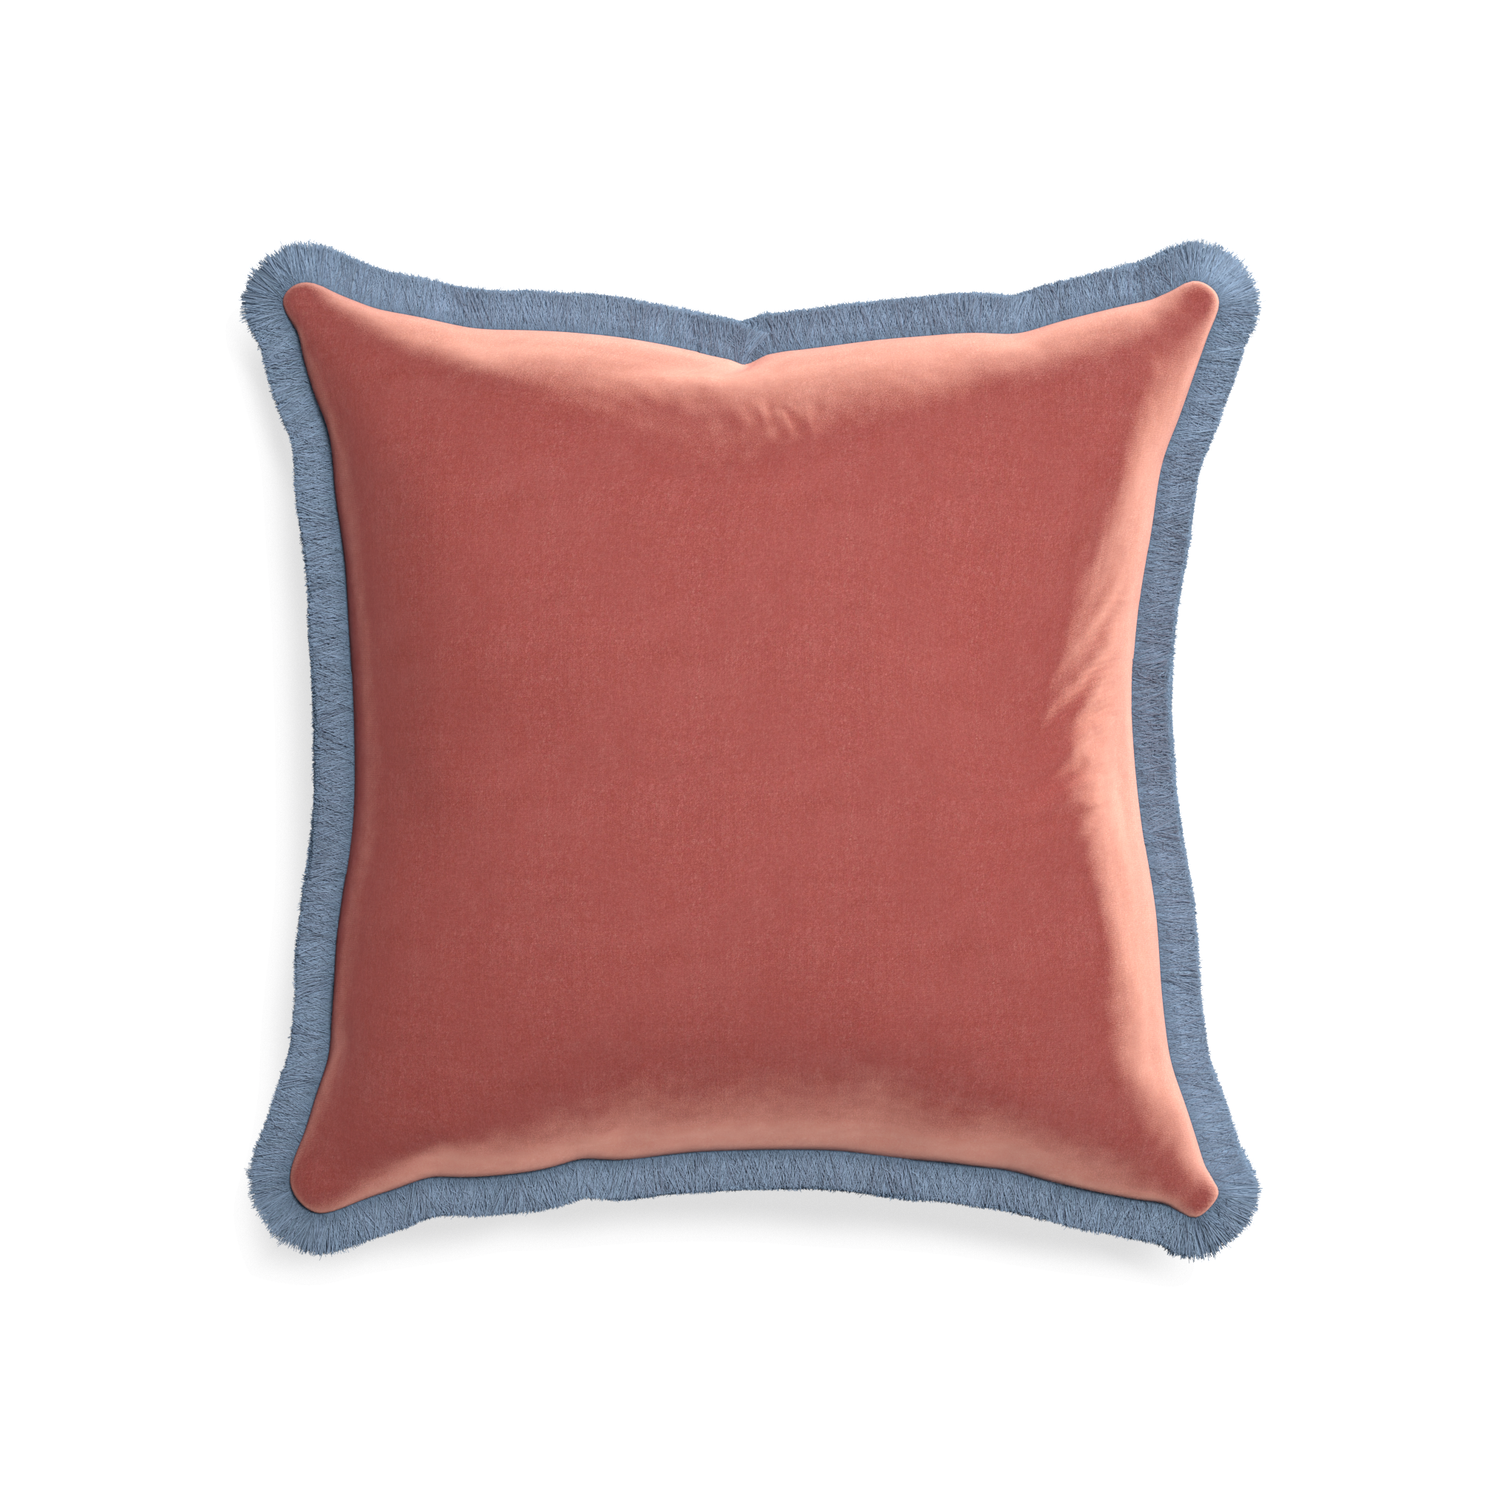 20-square cosmo velvet custom pillow with sky fringe on white background